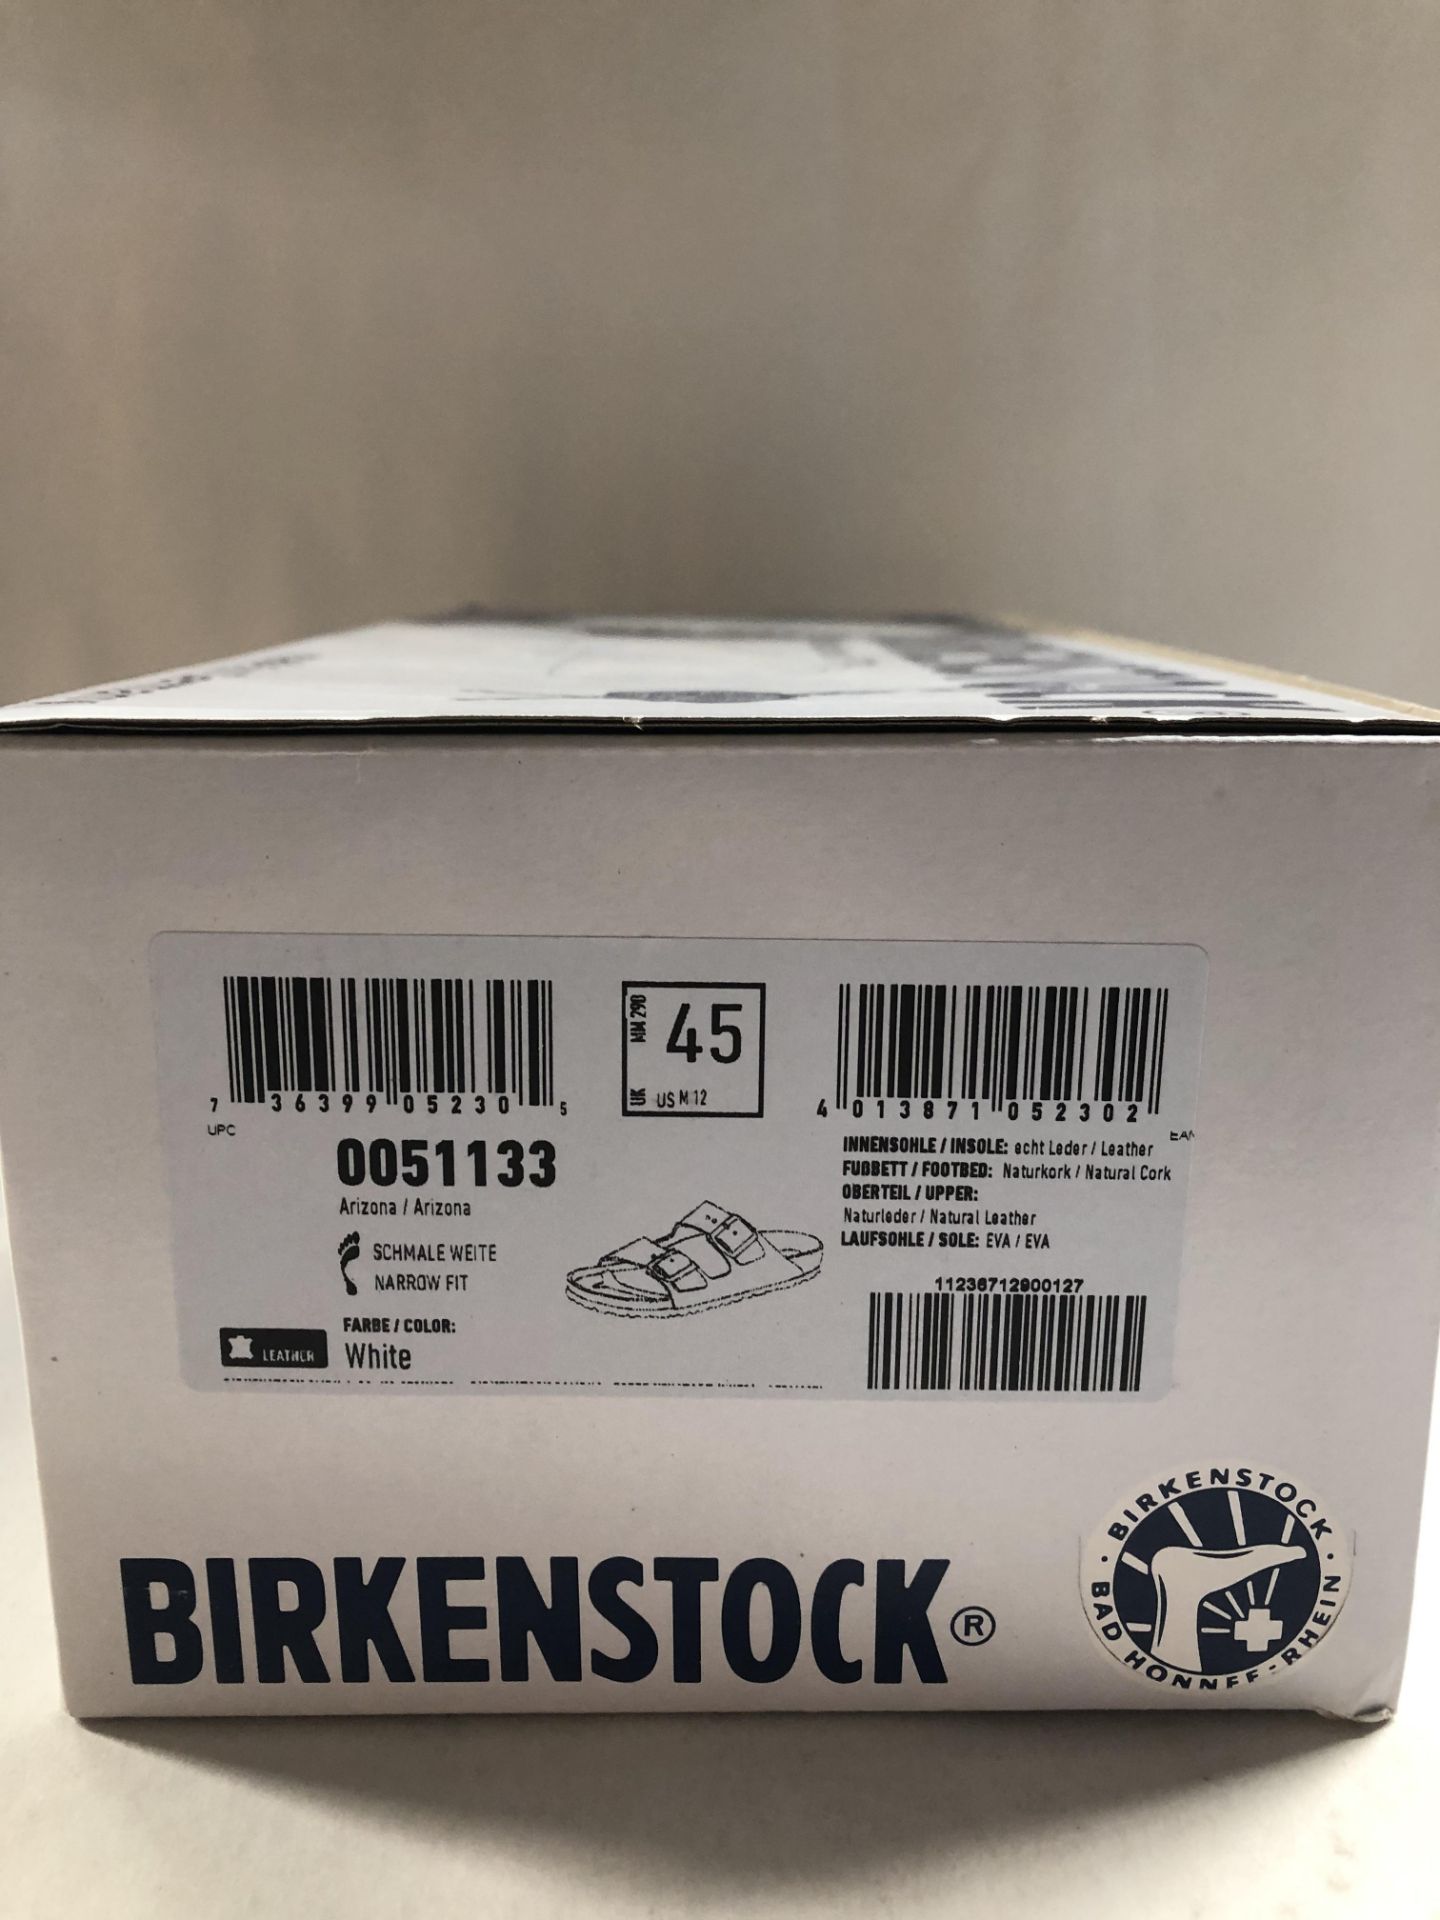 Birkenstock Unisex Adults' Arizona Slim Sandals, White (Weiss), 10.5 UK (Slim) (45 EU) 10.5 UK Unise - Image 2 of 3